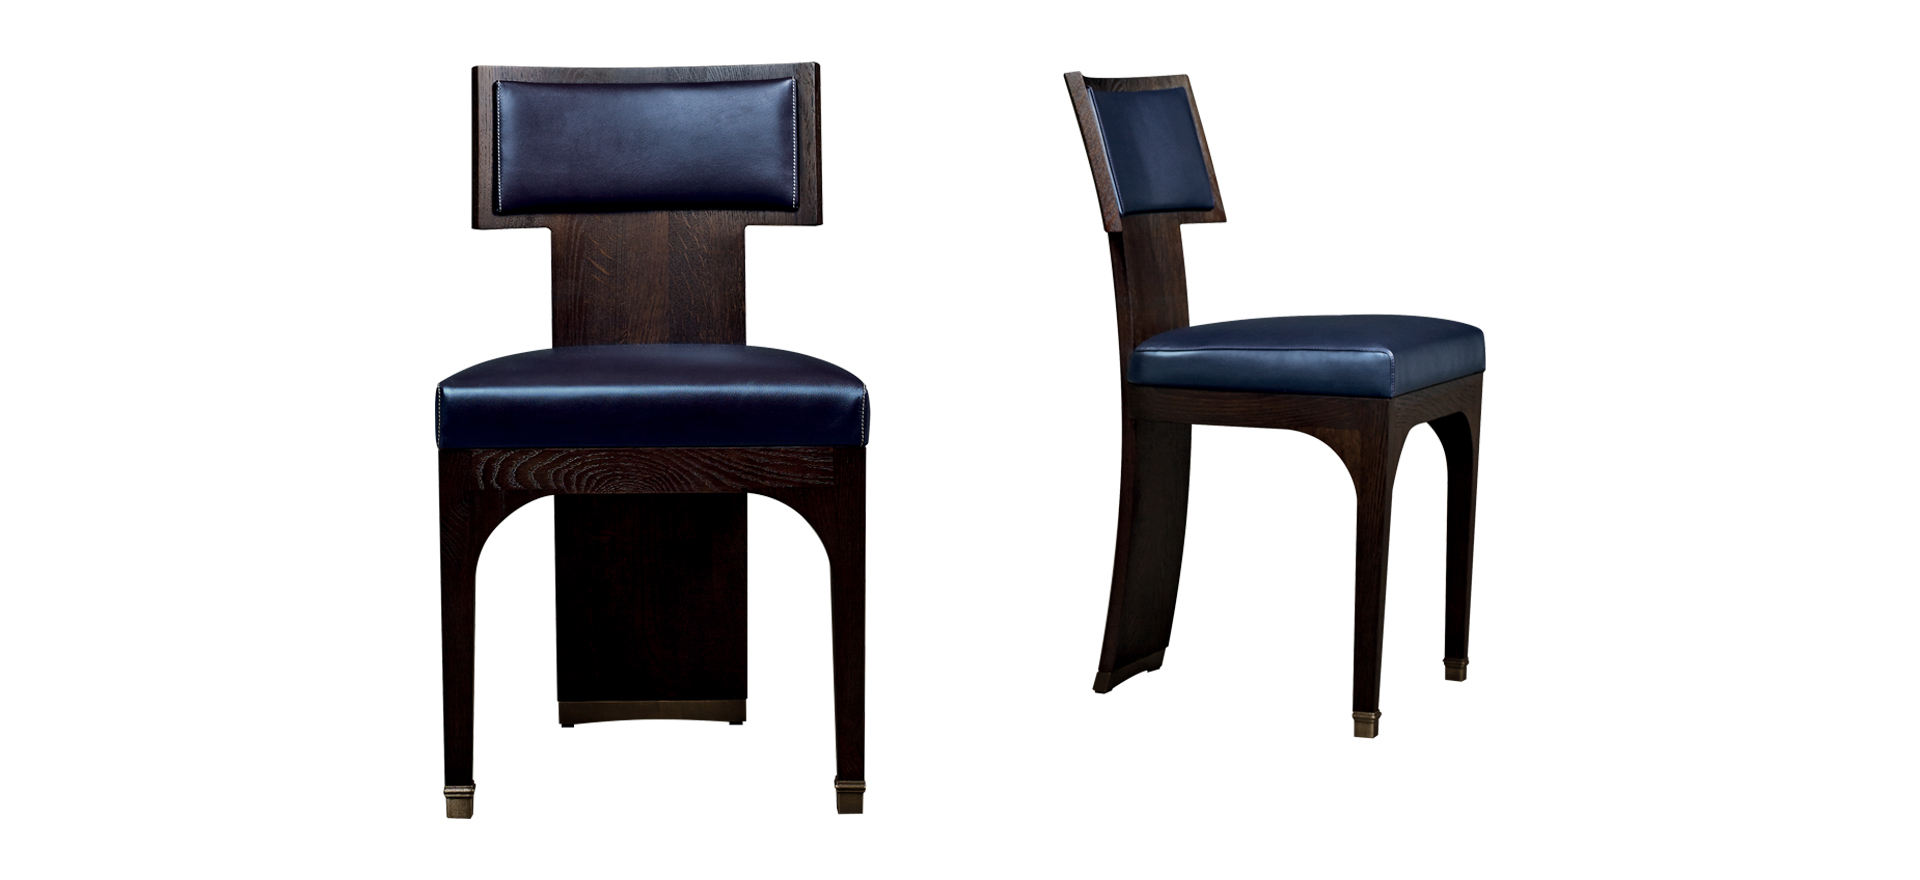 DC Chair — деревянный обеденный стул с сиденьем и спинкой из кожи и бронзовыми ножками из коллекции The London Collection компании Promemoria | Promemoria